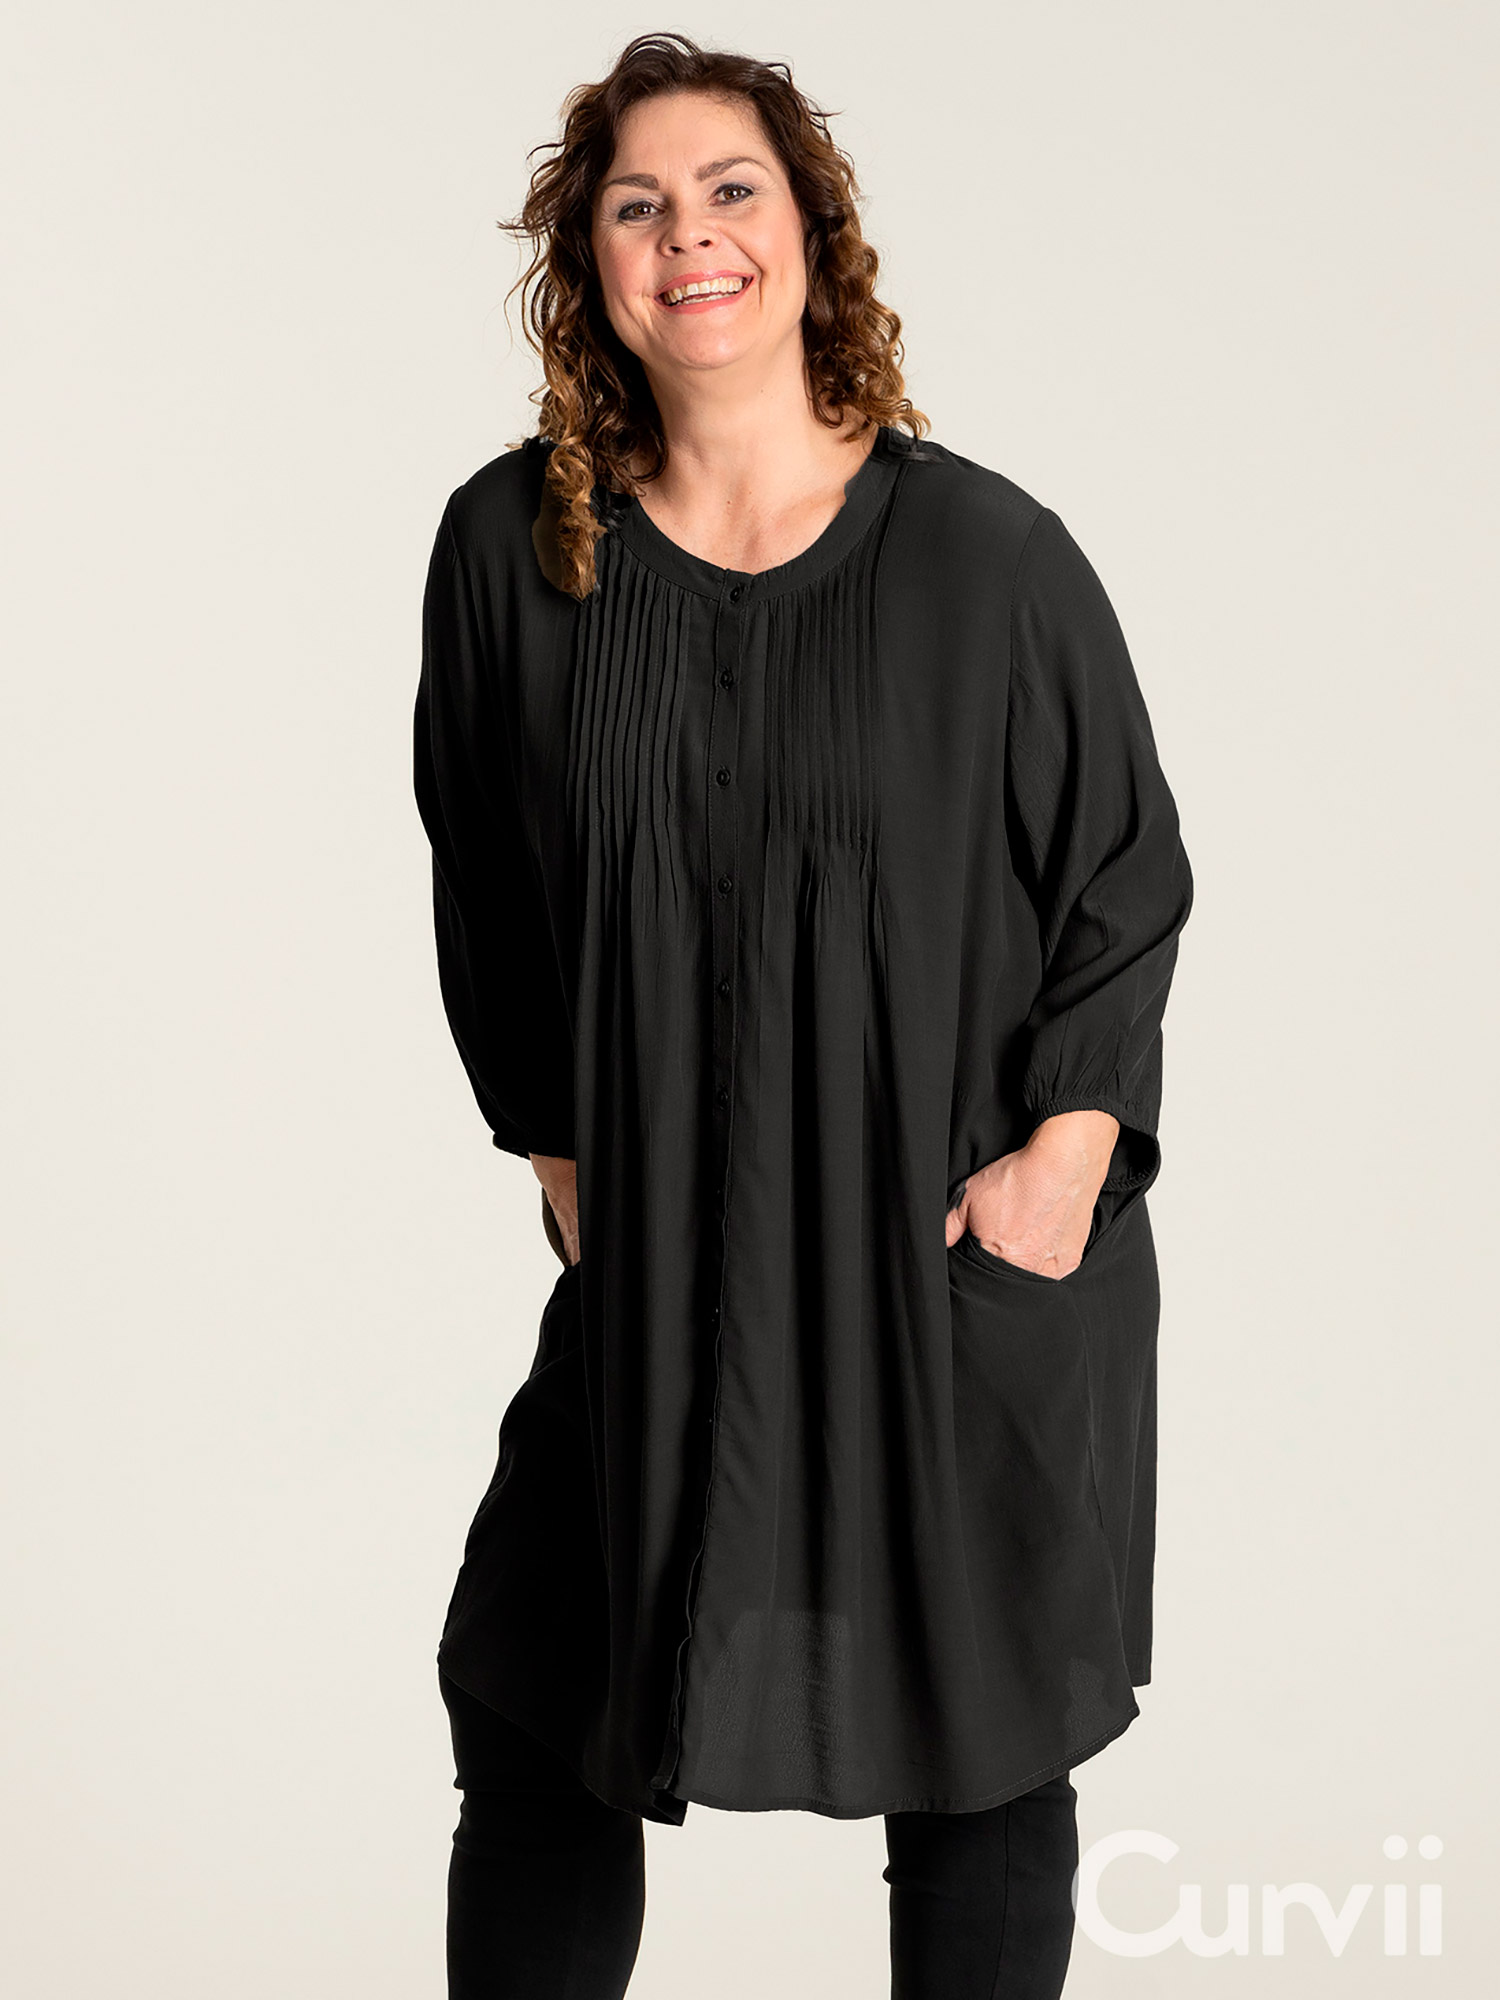 JOHANNE - Flot sort skjorte tunika med lommer fra Gozzip